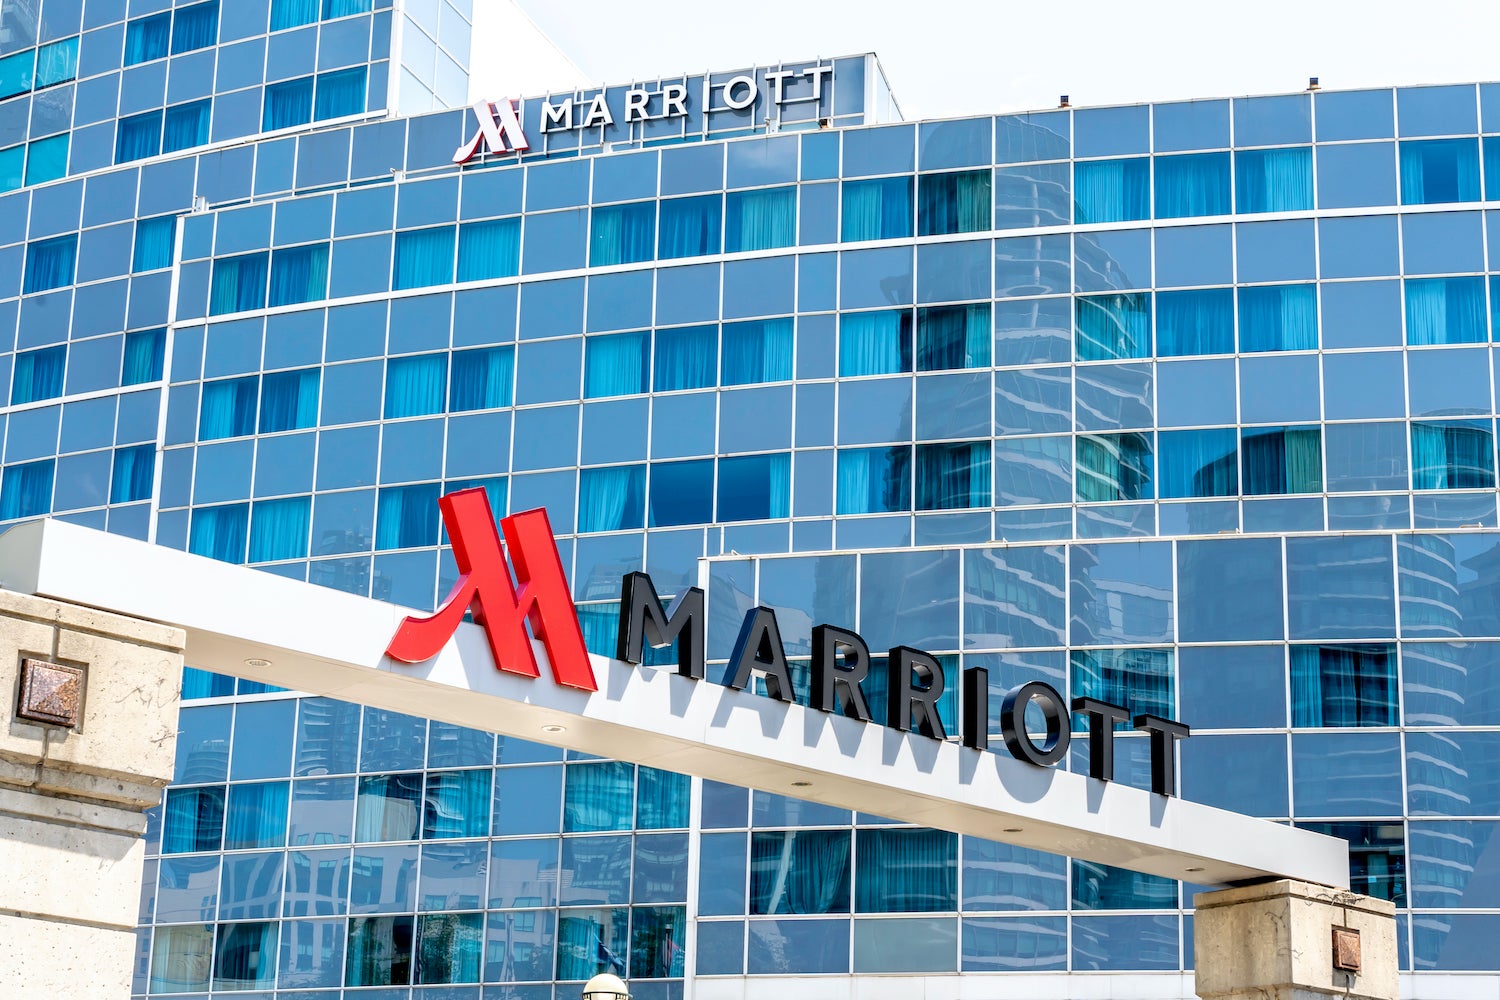 Marriott in Toronto